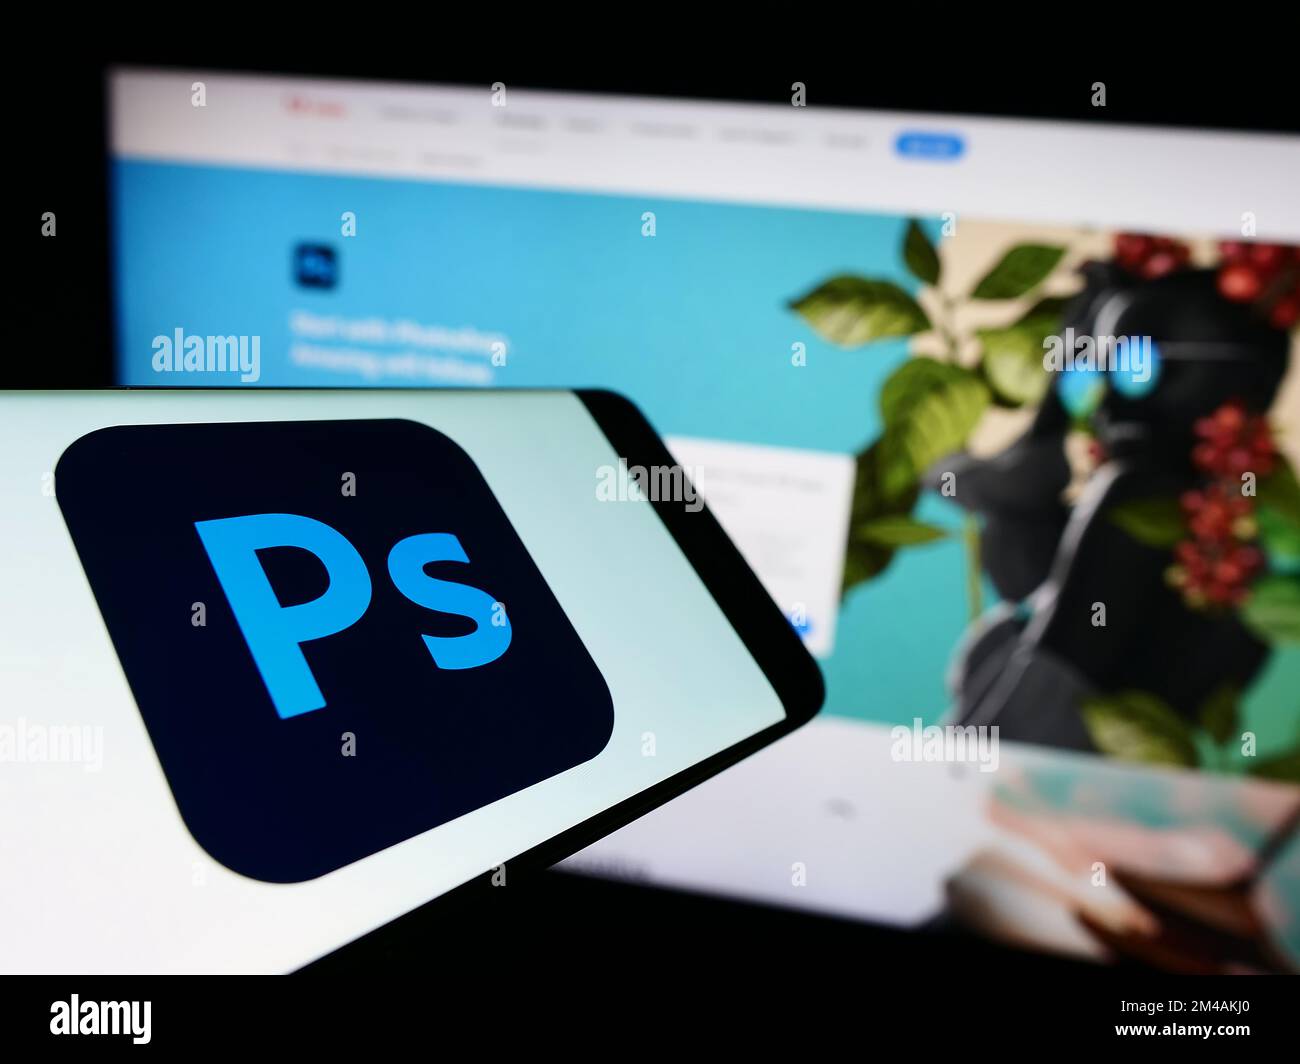 Telefono cellulare con il logo del software editor di grafica Adobe Photoshop sullo schermo di fronte al sito web aziendale. Messa a fuoco al centro del display del telefono. Foto Stock